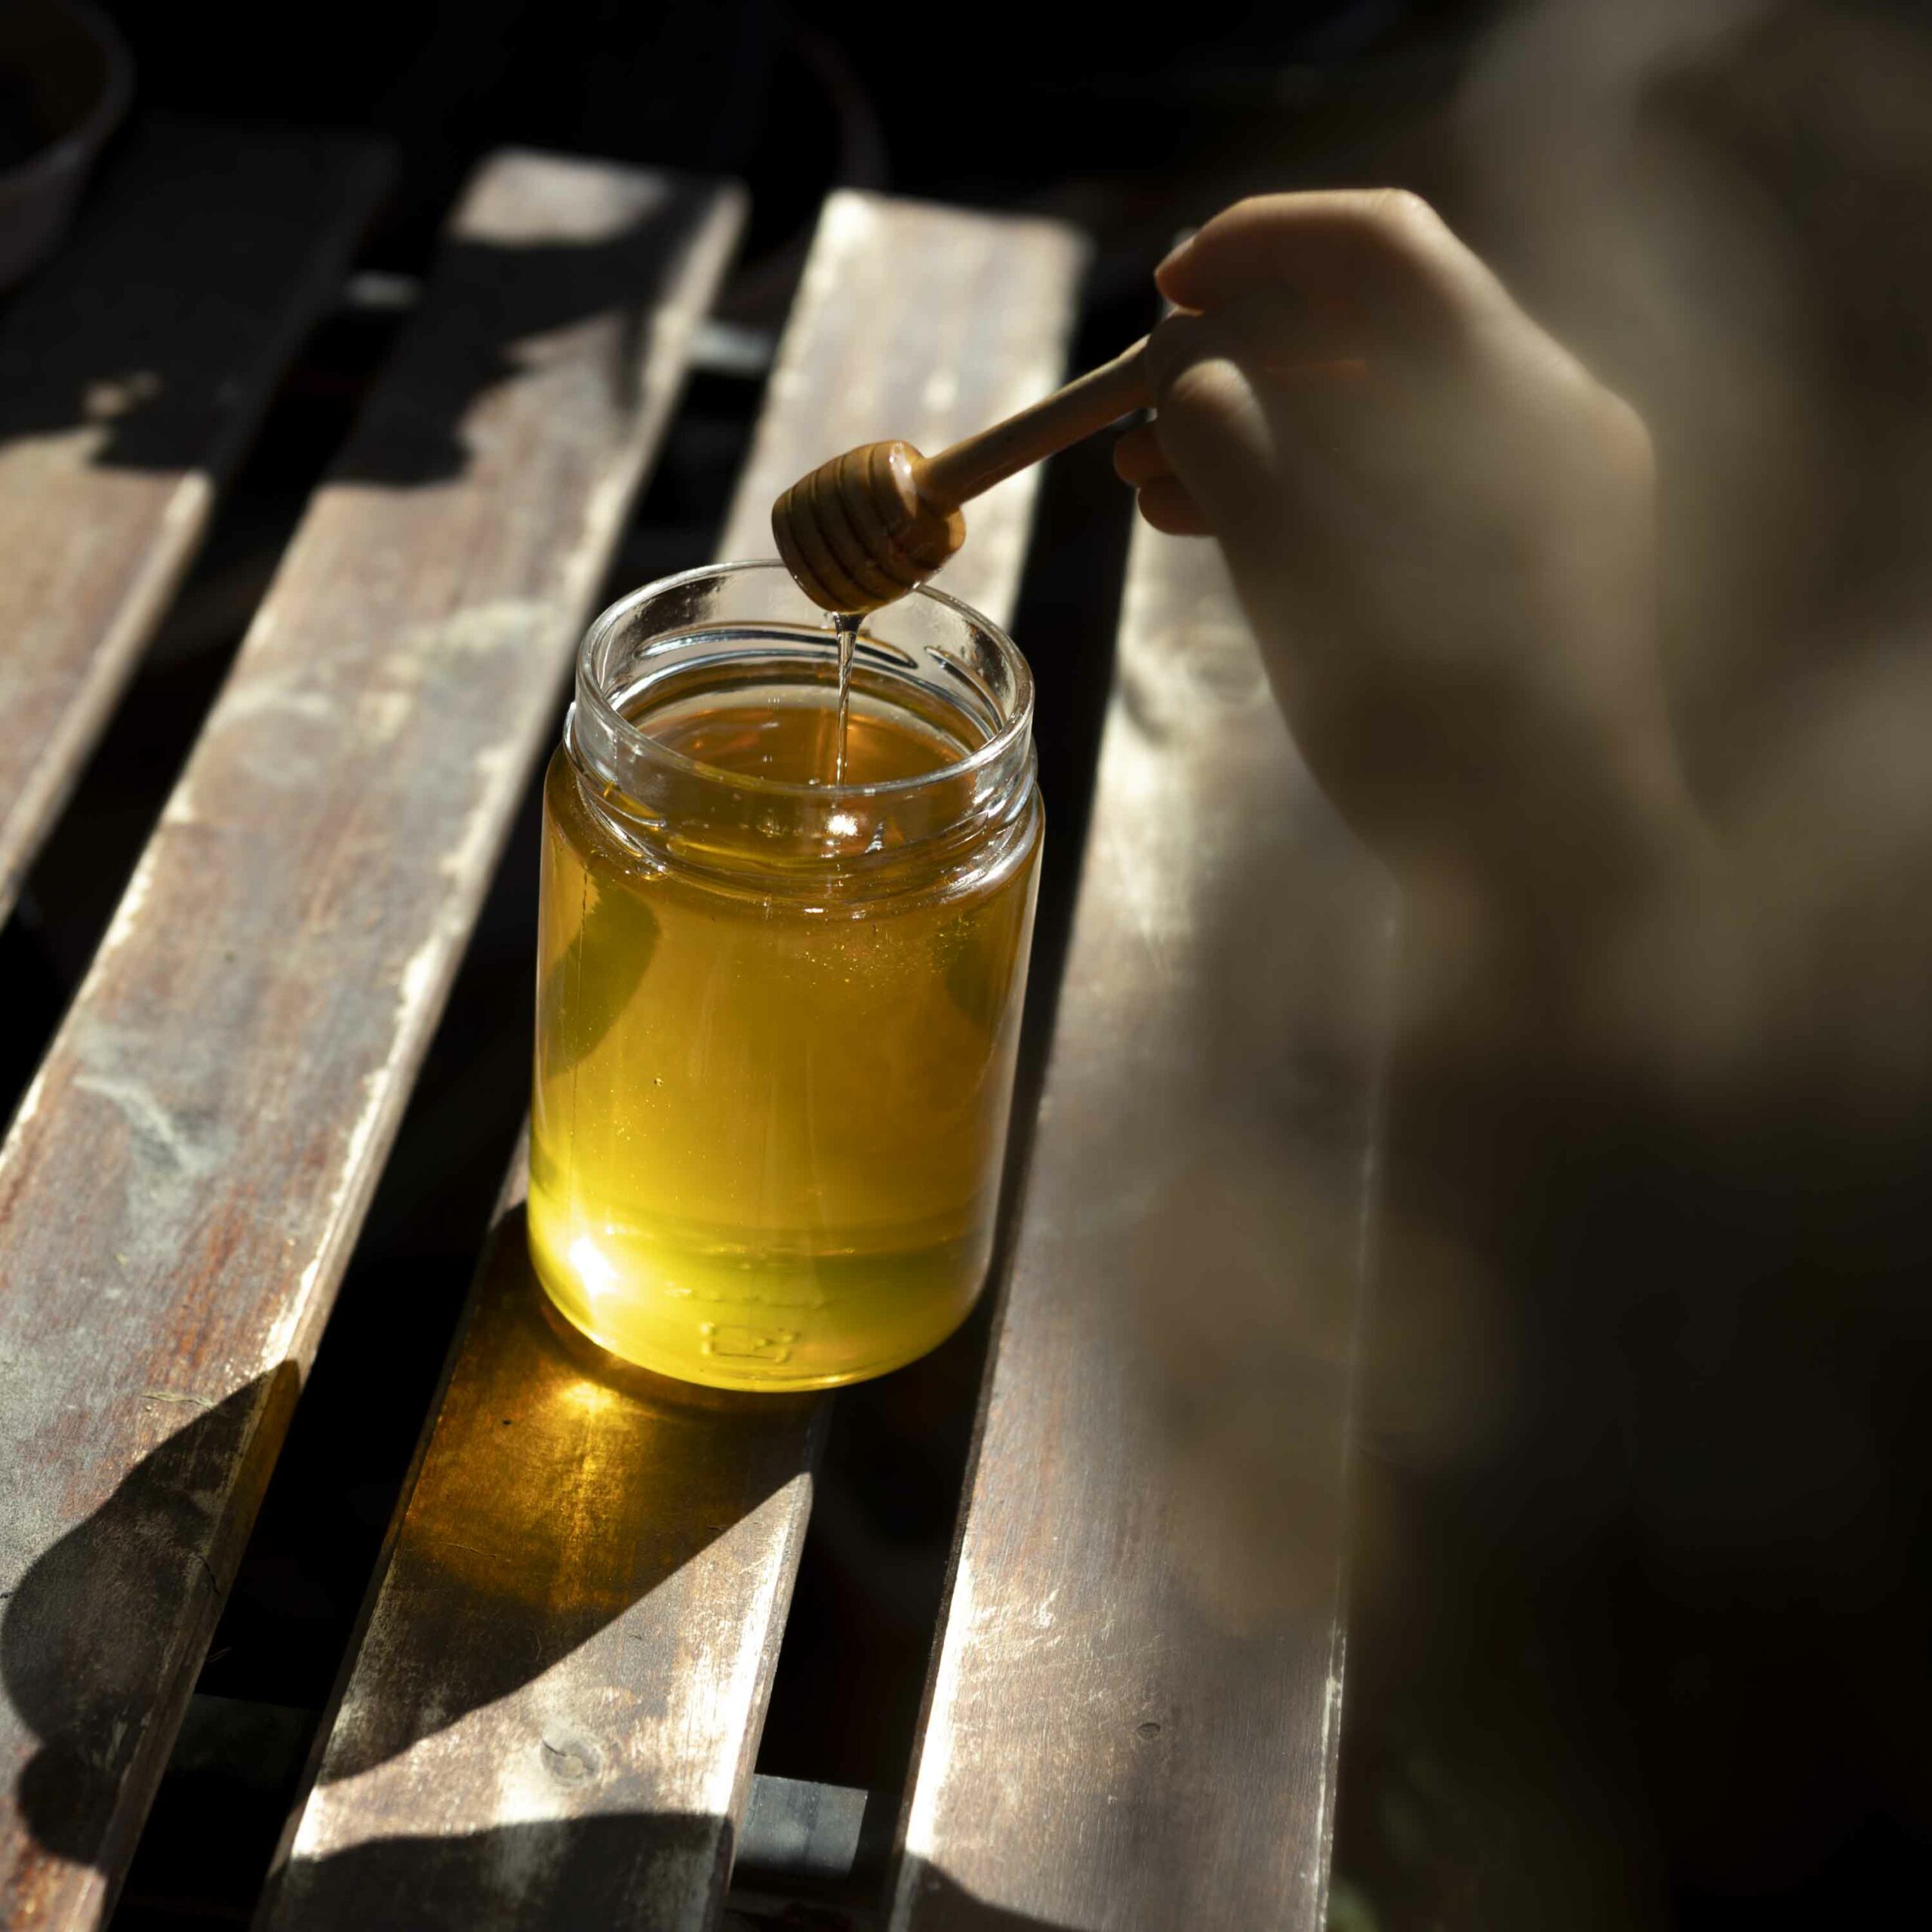 Conservare il miele nella cera d'api è differente rispetto a conservare il miele in vetro